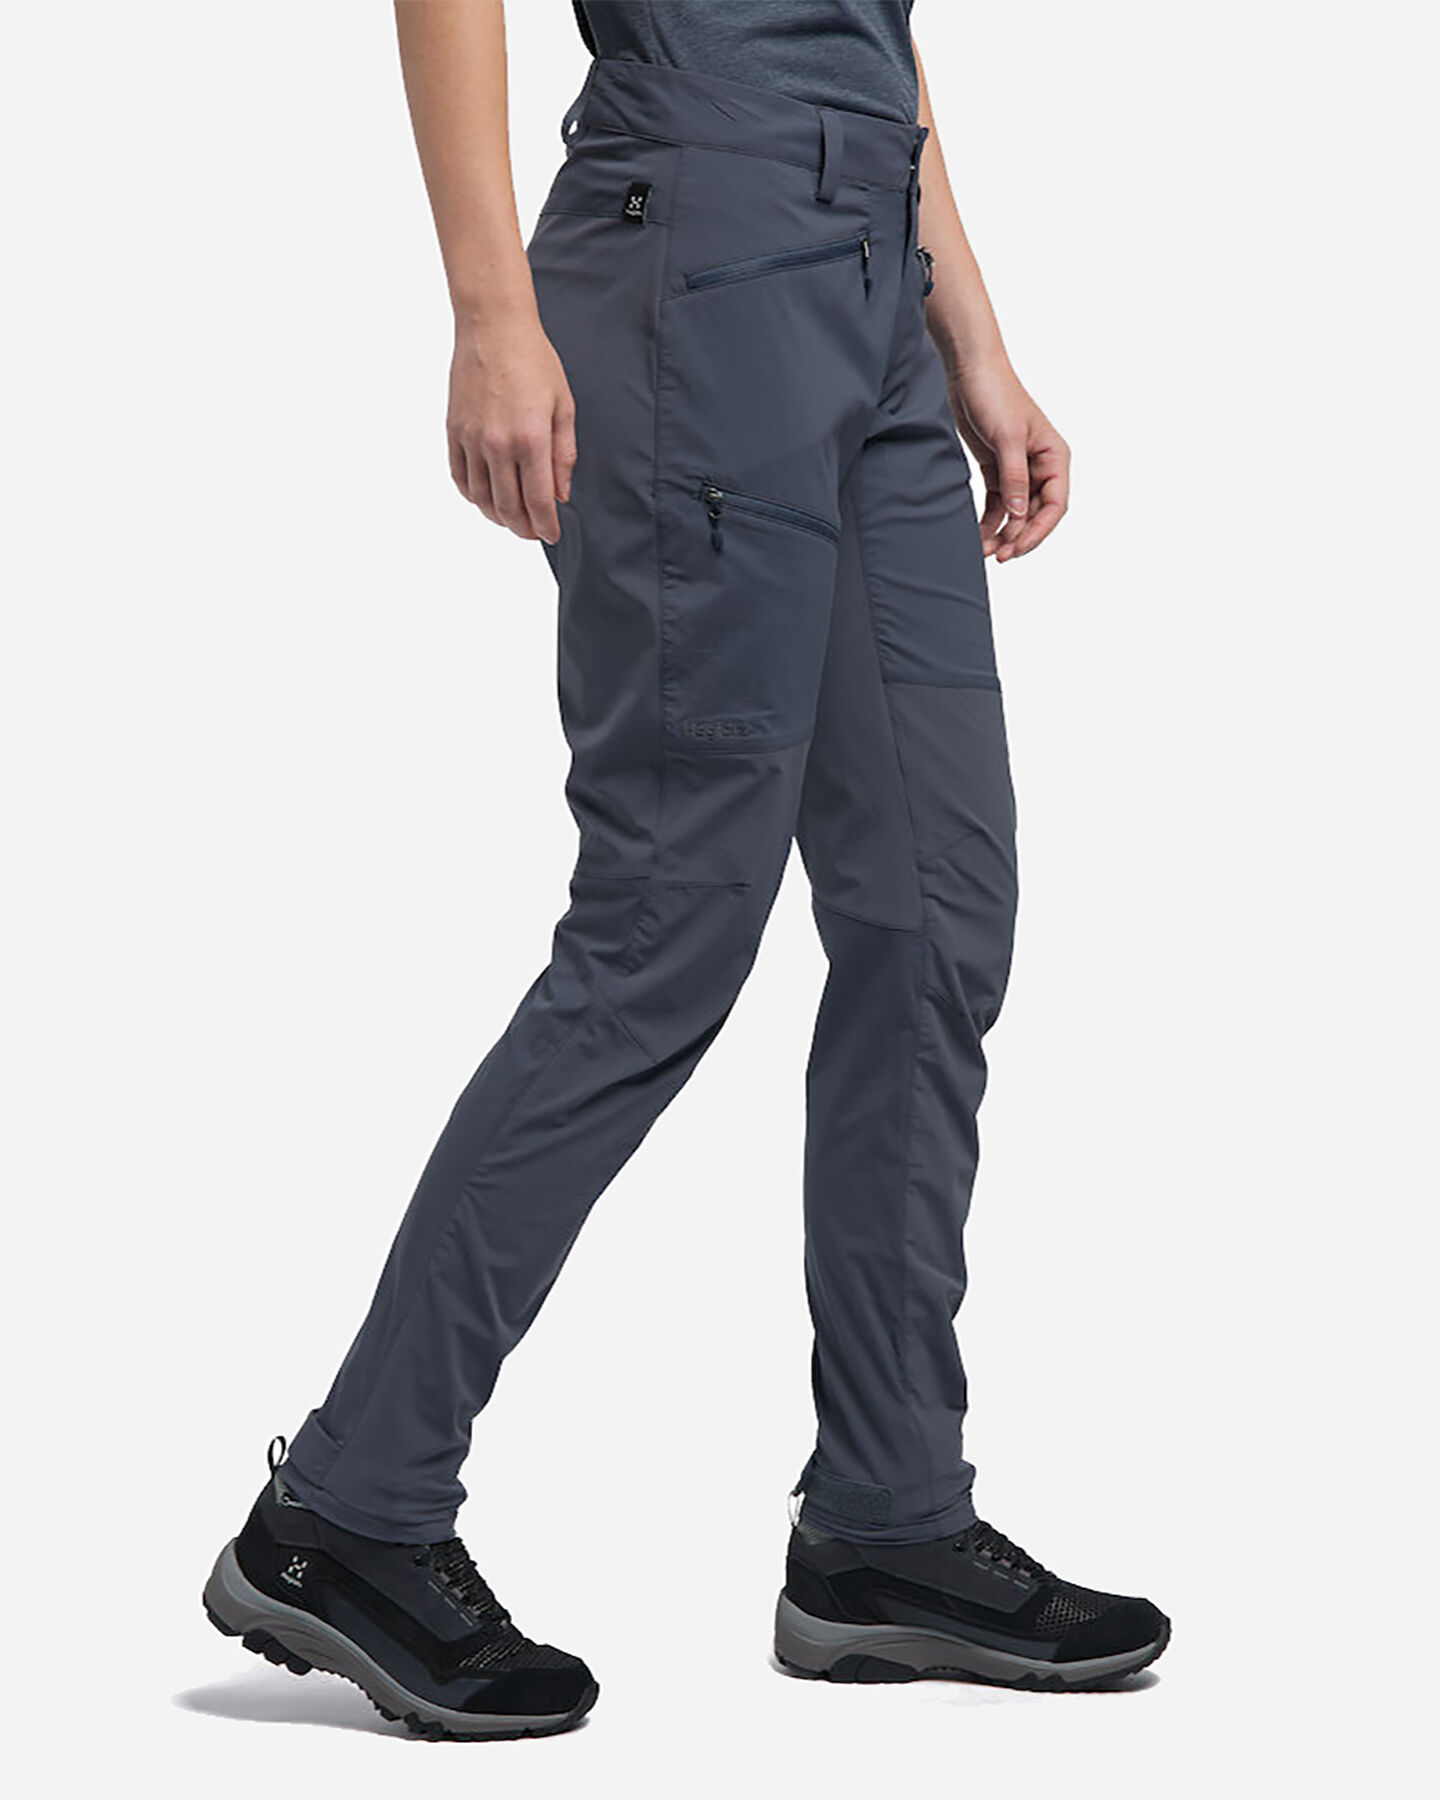  Pantalone outdoor HAGLOFS LITE FLEX Q W S4077127|1|34 scatto 3